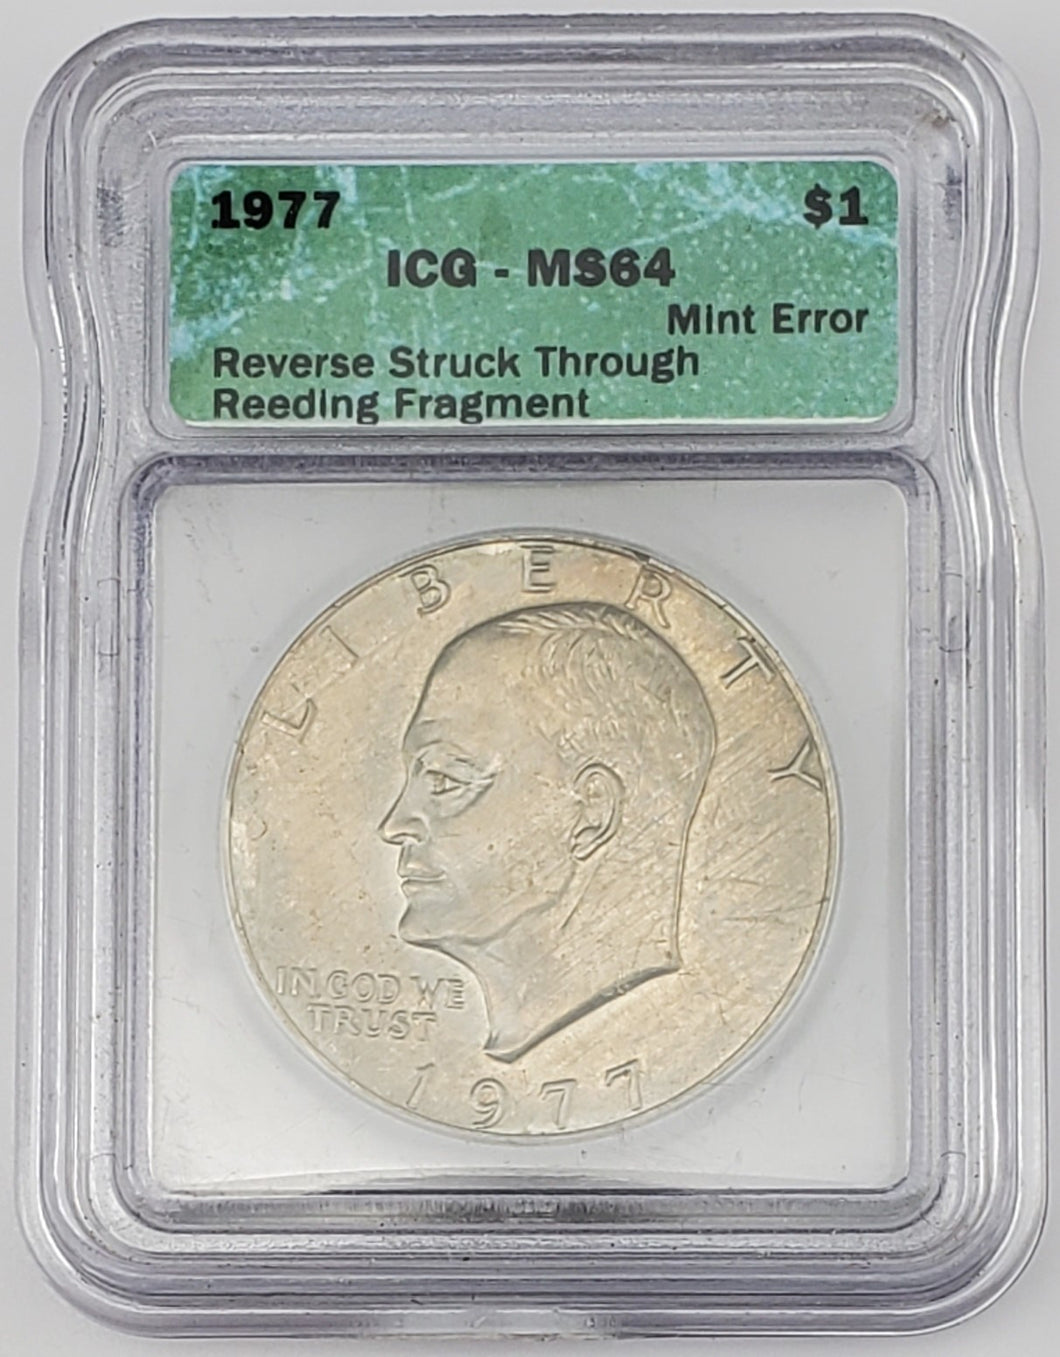 1977 Eisenhower Dollar Reverse Struck Thru Reeding Fragment Mint Error ICG MS 64